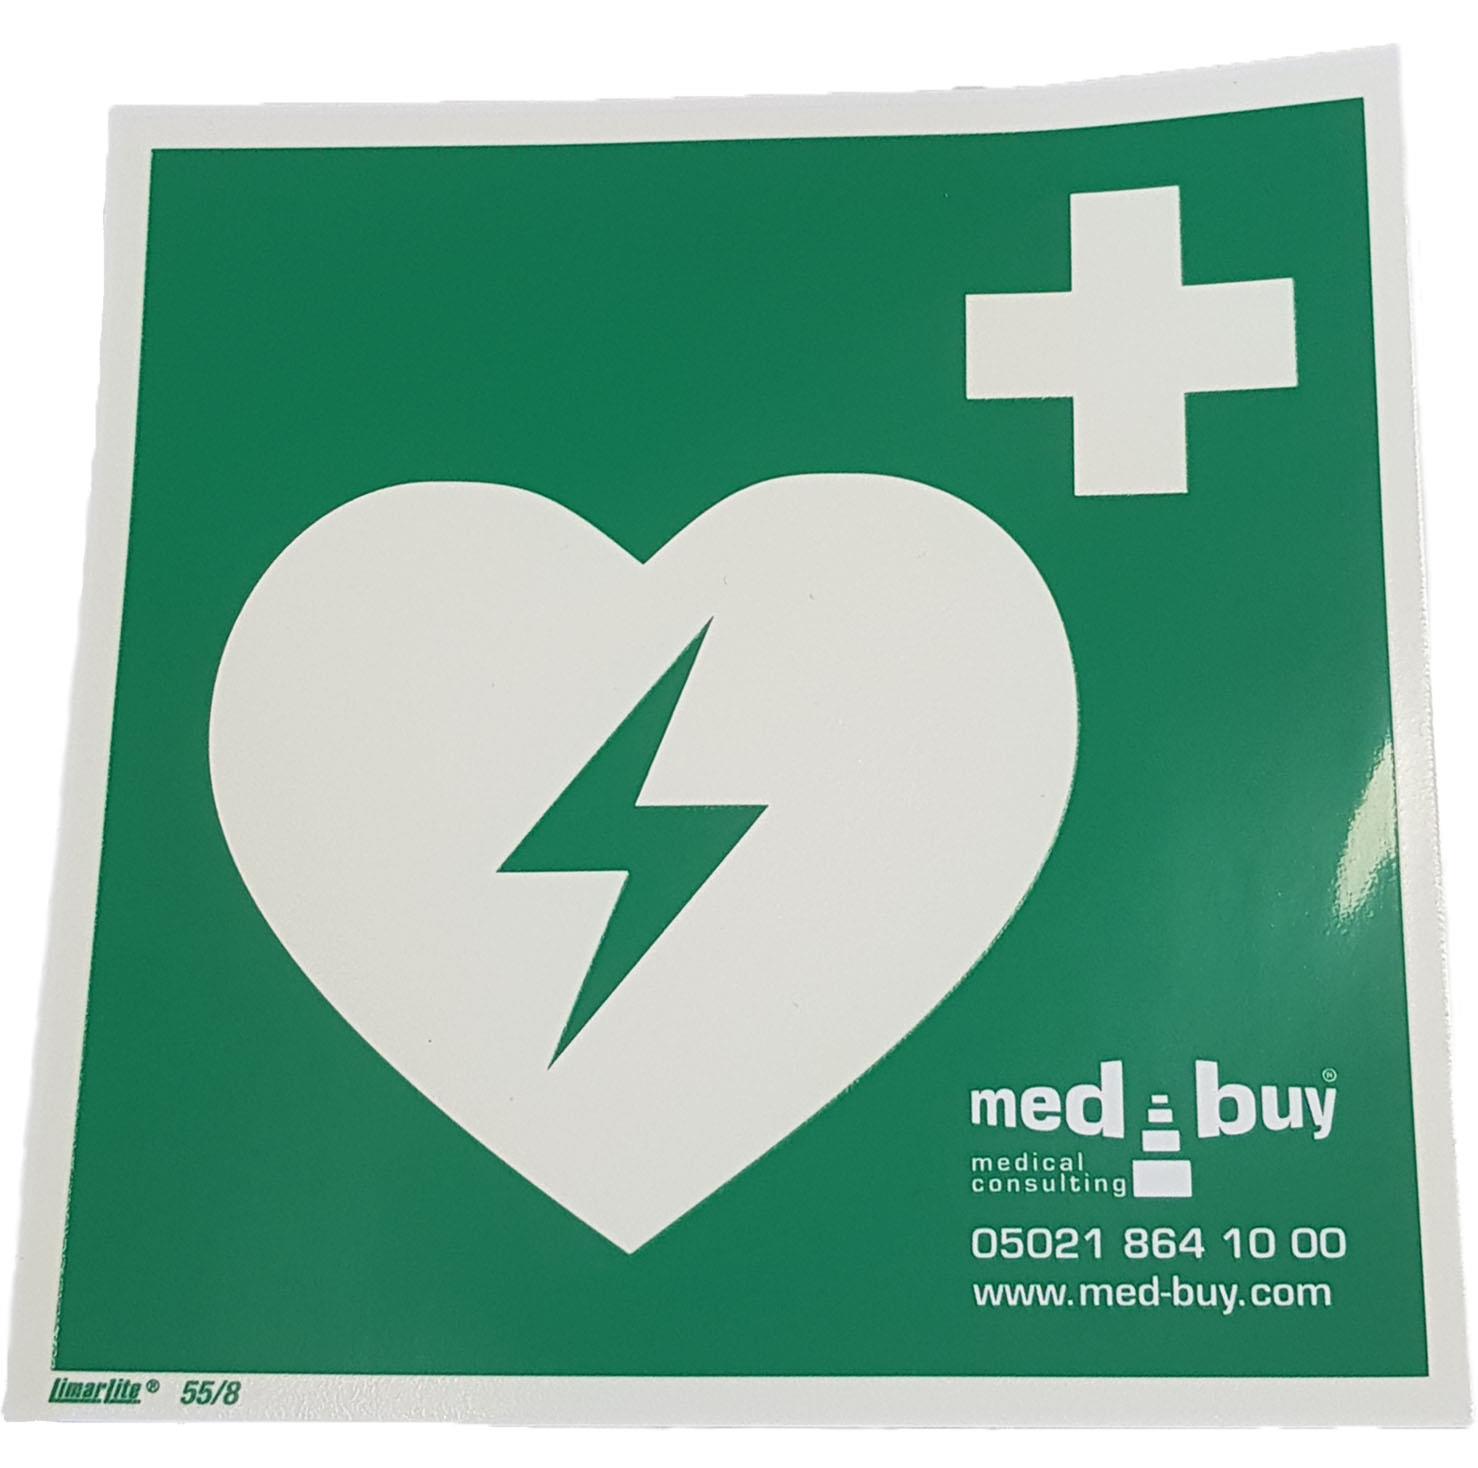 Hinweisschild Aufkleber AED, grün, 15 x 15 cm, medbuy-Aufdruck